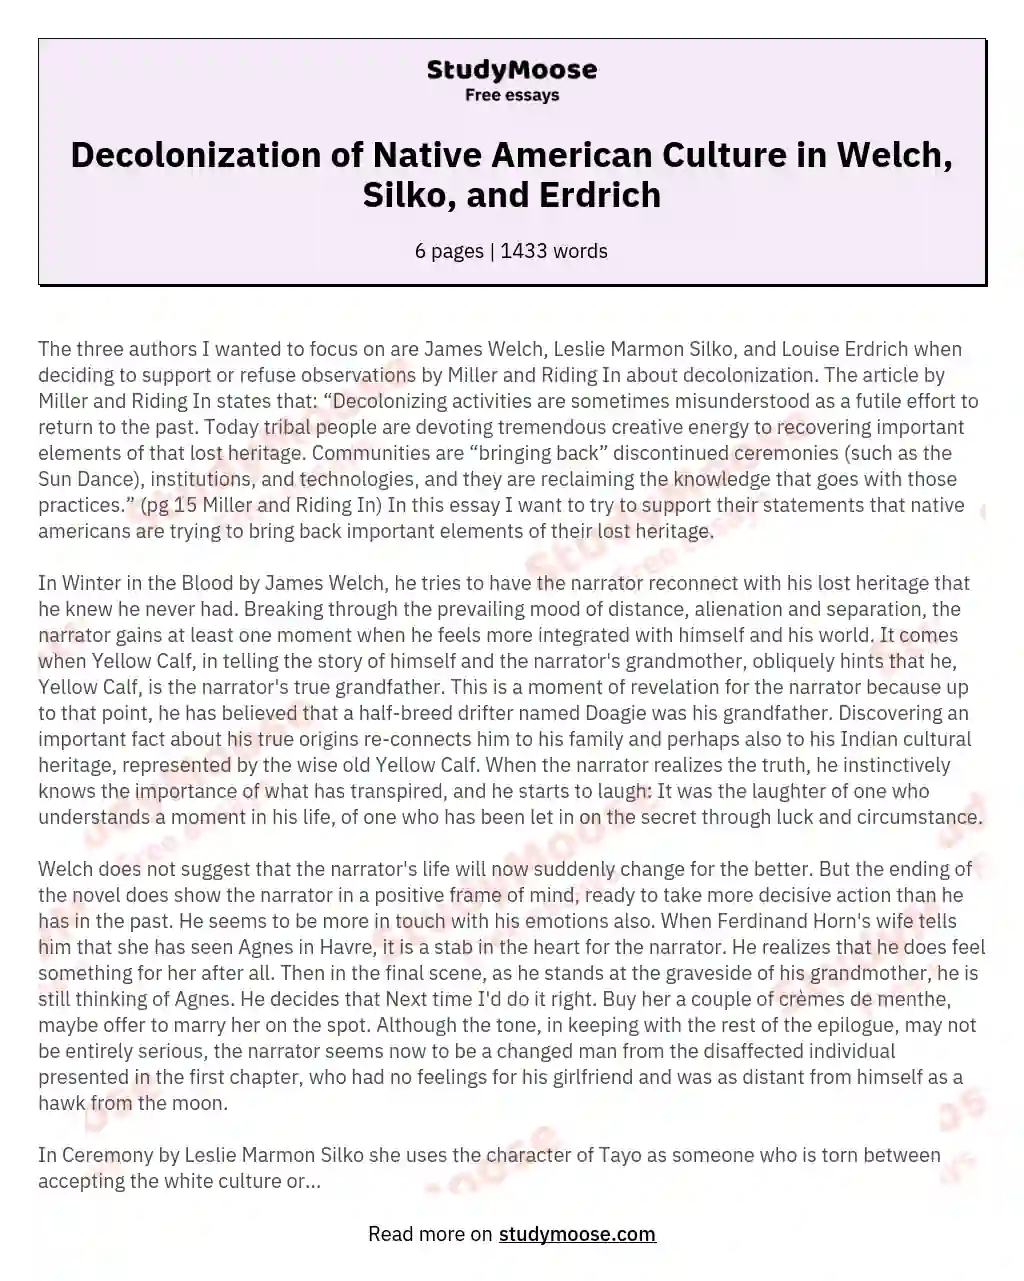 Decolonization of Native American Culture in Welch, Silko, and Erdrich essay